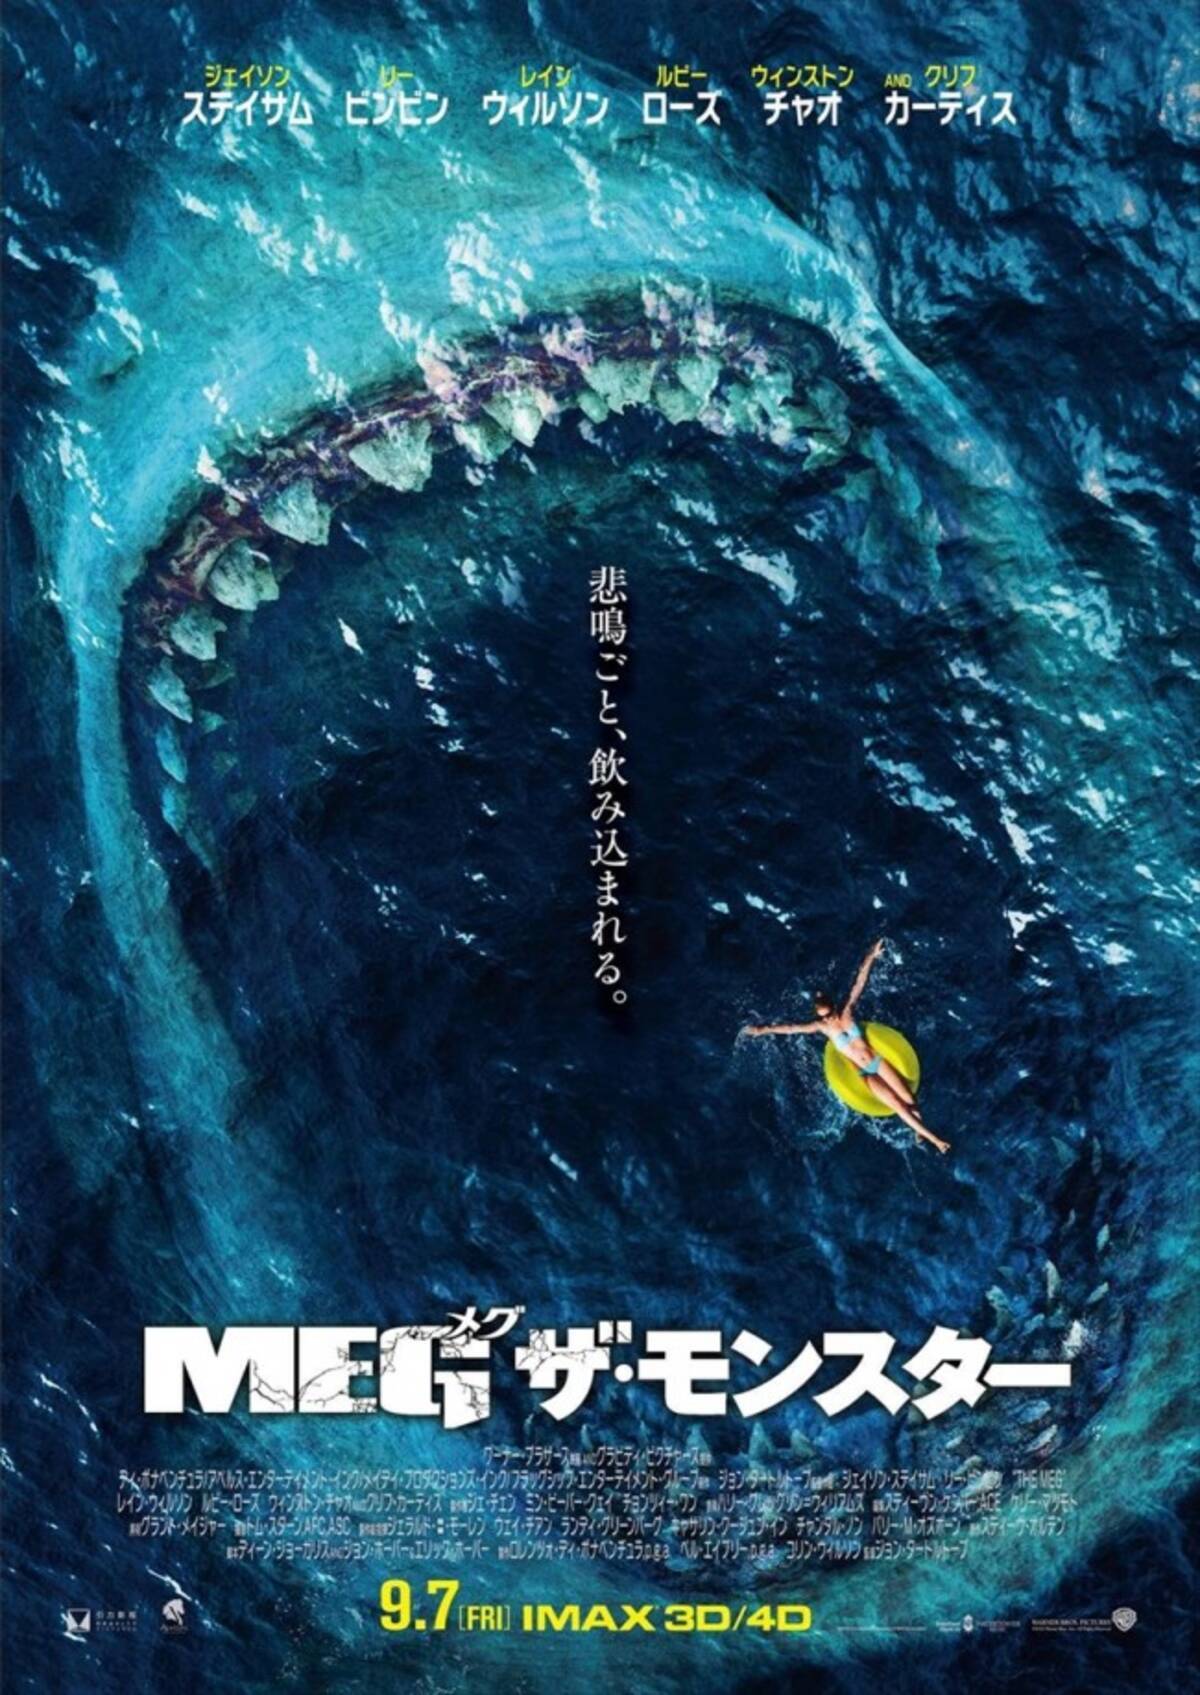 太古の超巨大ザメ メガロドン が迫る Meg 戦慄の予告到着 18年7月8日 エキサイトニュース